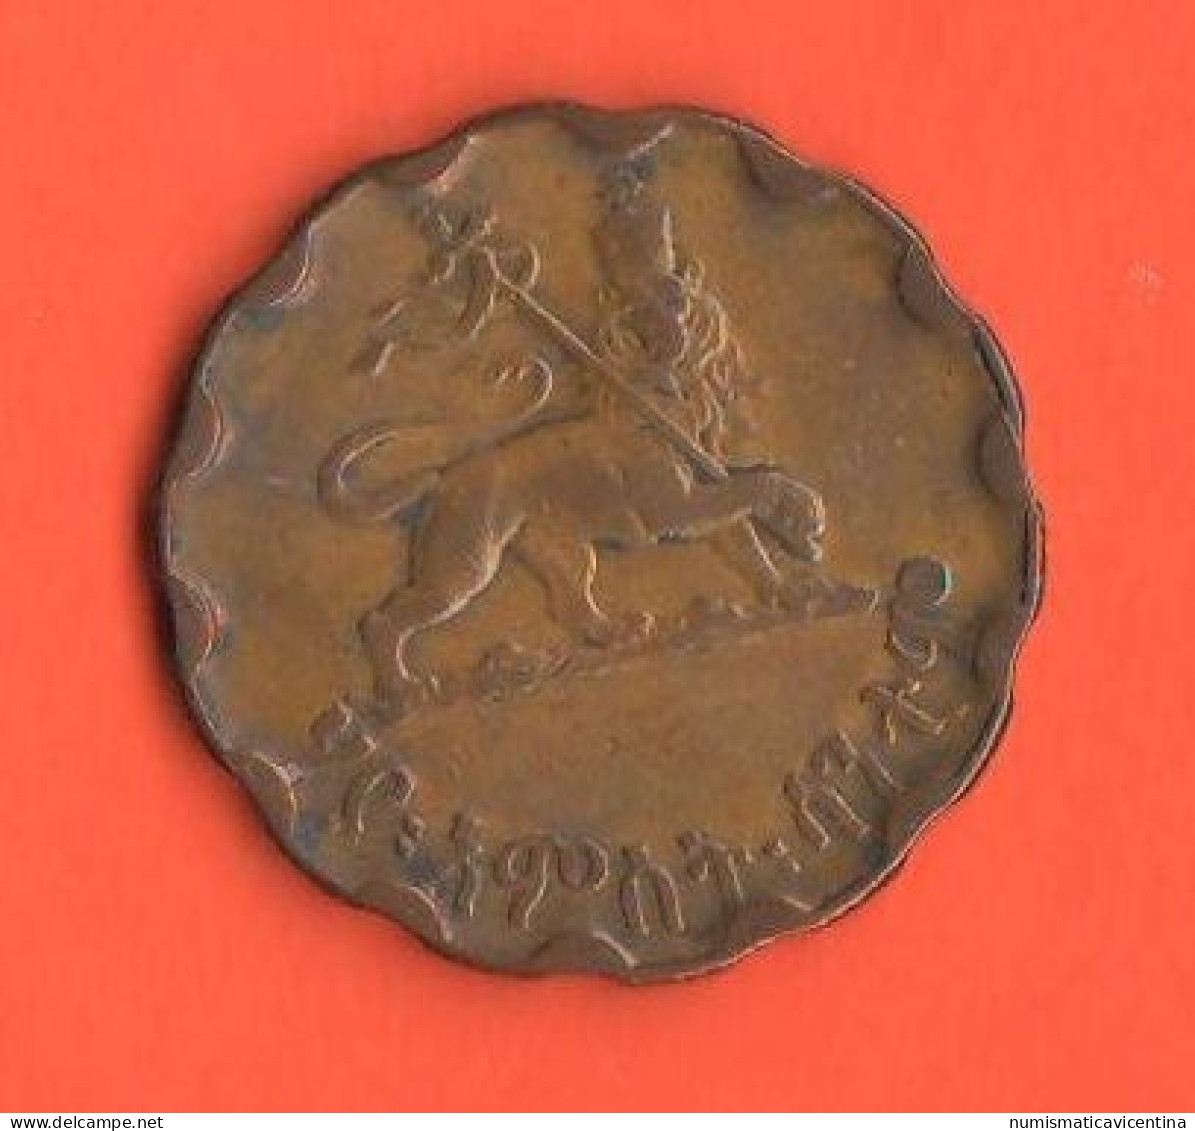 Etiopia 25 Cents 1936 Haile Selassie I° Ethiopia Copper Coin - Ethiopia